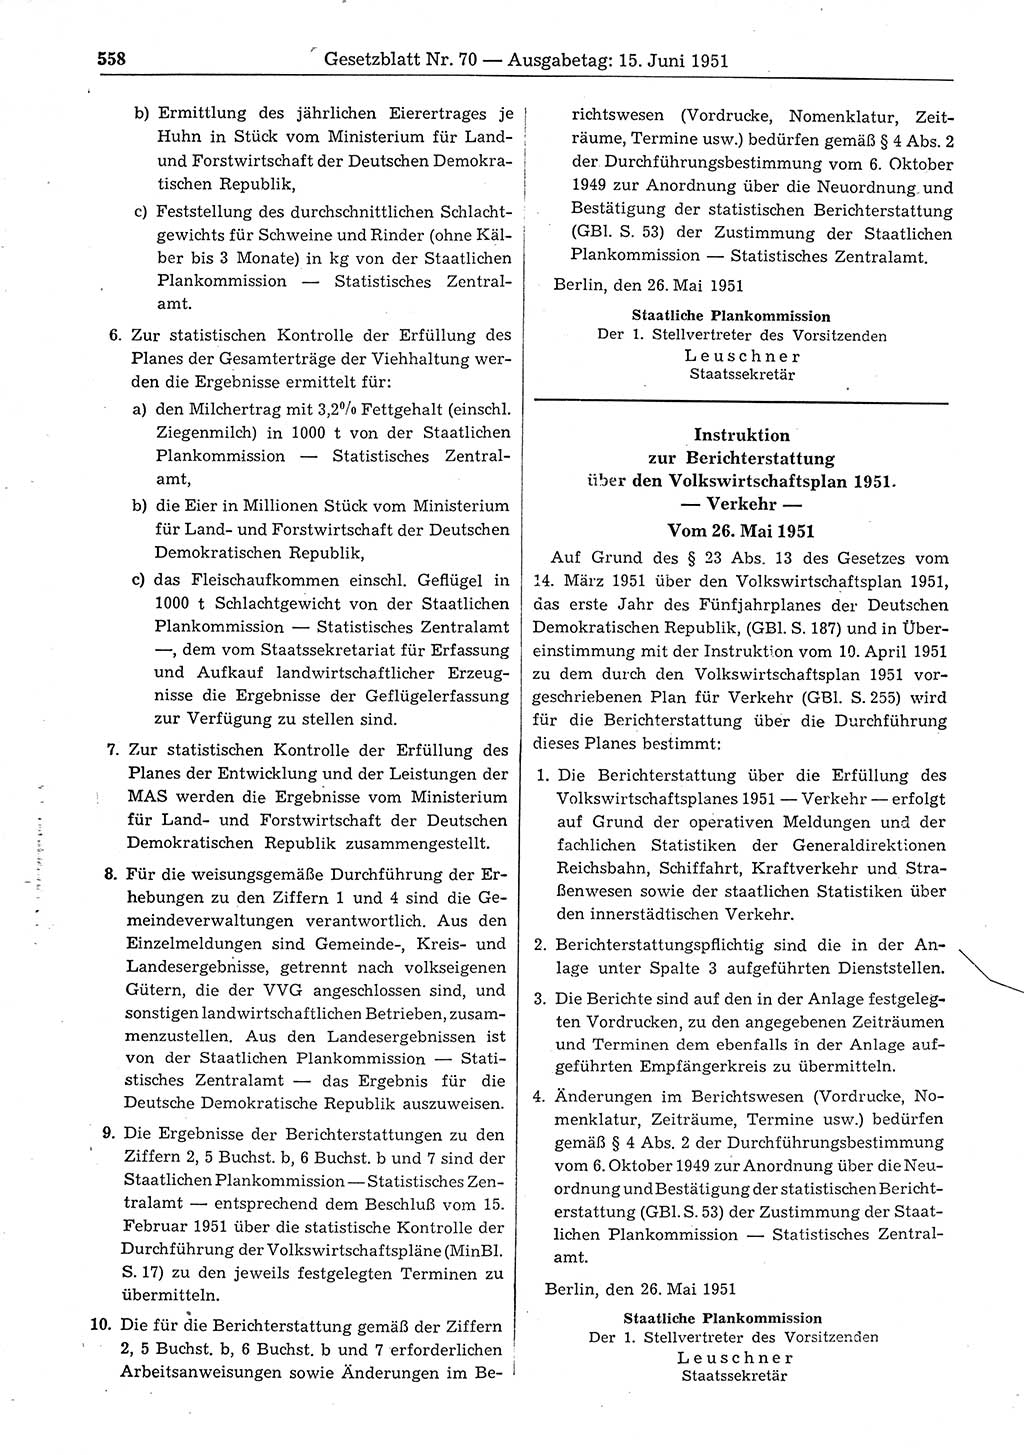 Gesetzblatt (GBl.) der Deutschen Demokratischen Republik (DDR) 1951, Seite 558 (GBl. DDR 1951, S. 558)